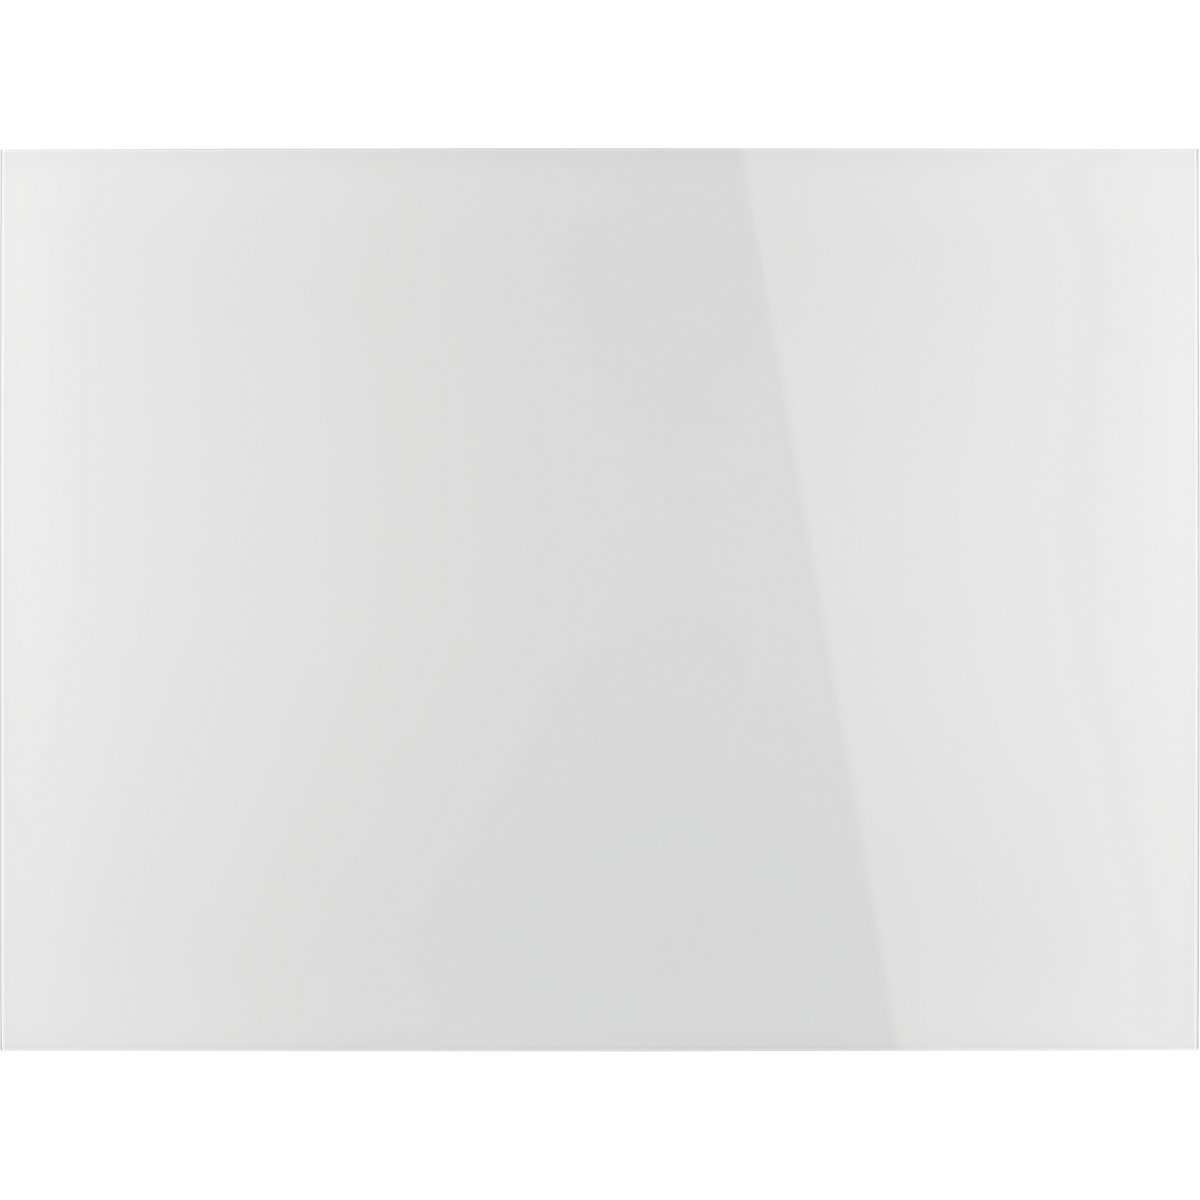 magnetoplan – Dizajnerska staklena ploča, magnetna, ŠxV 1200 x 900 mm, u briljant bijeloj boji